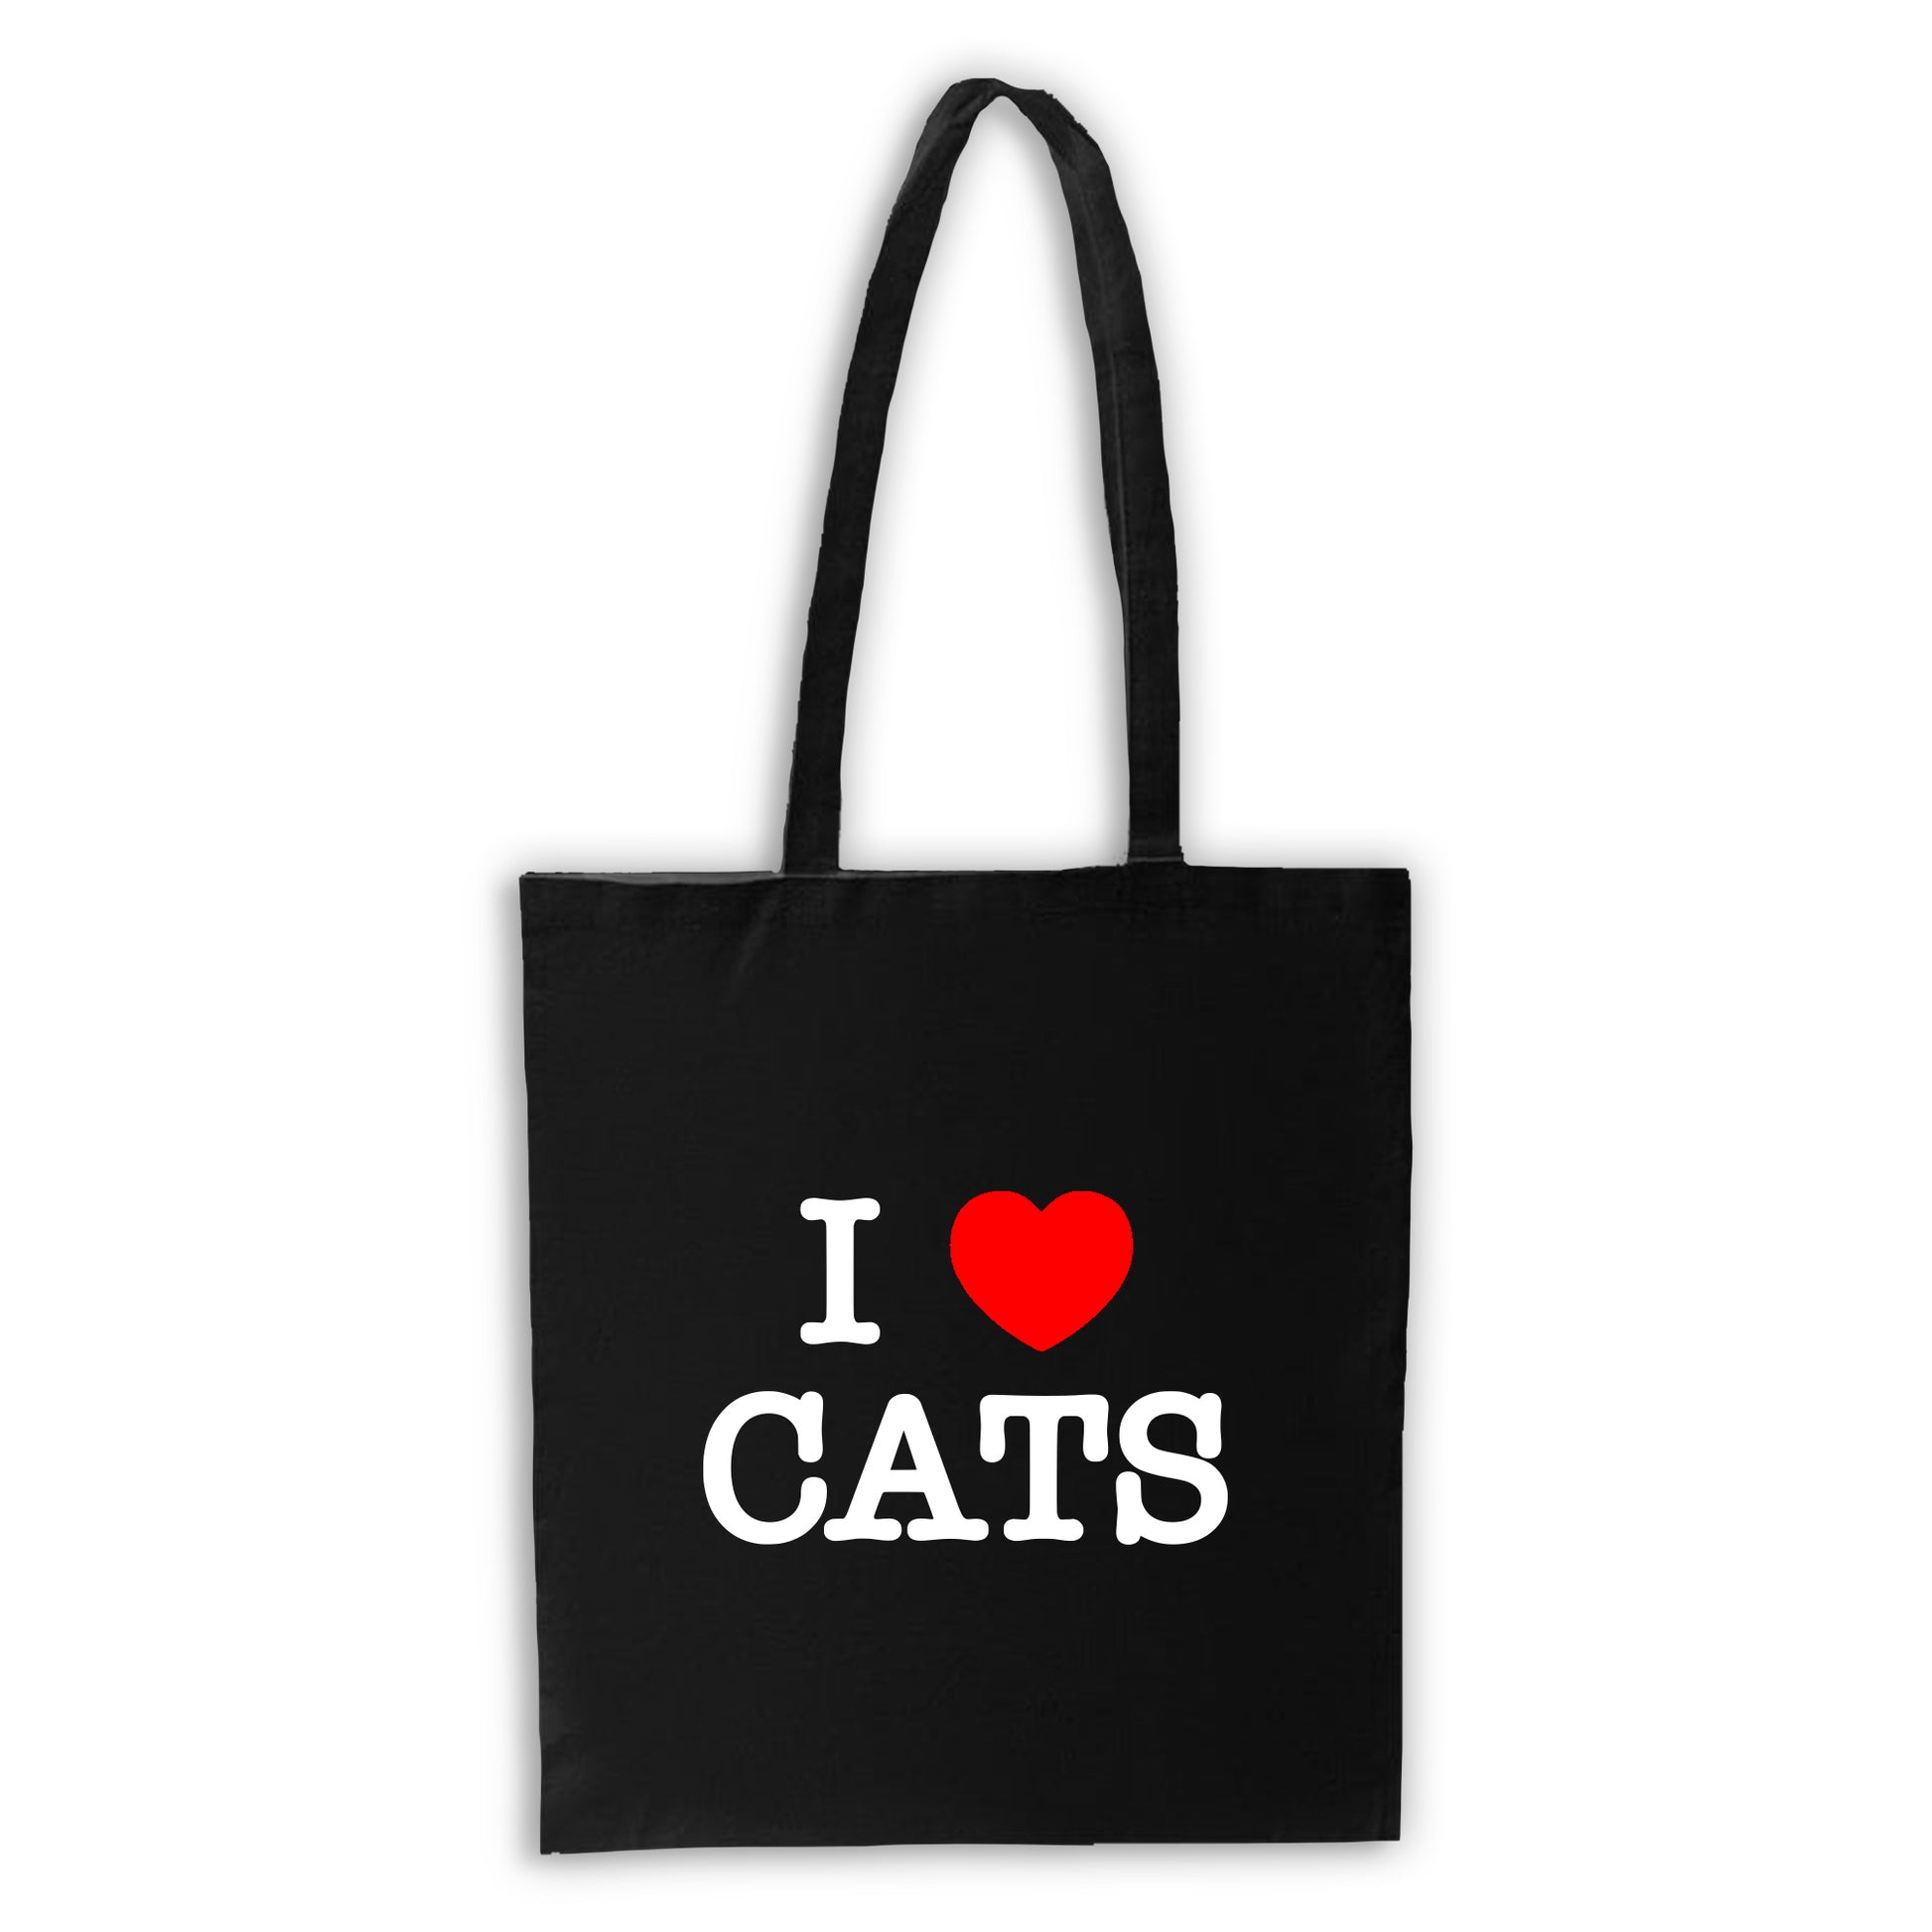 I HEART Cats - Black Tote Bag